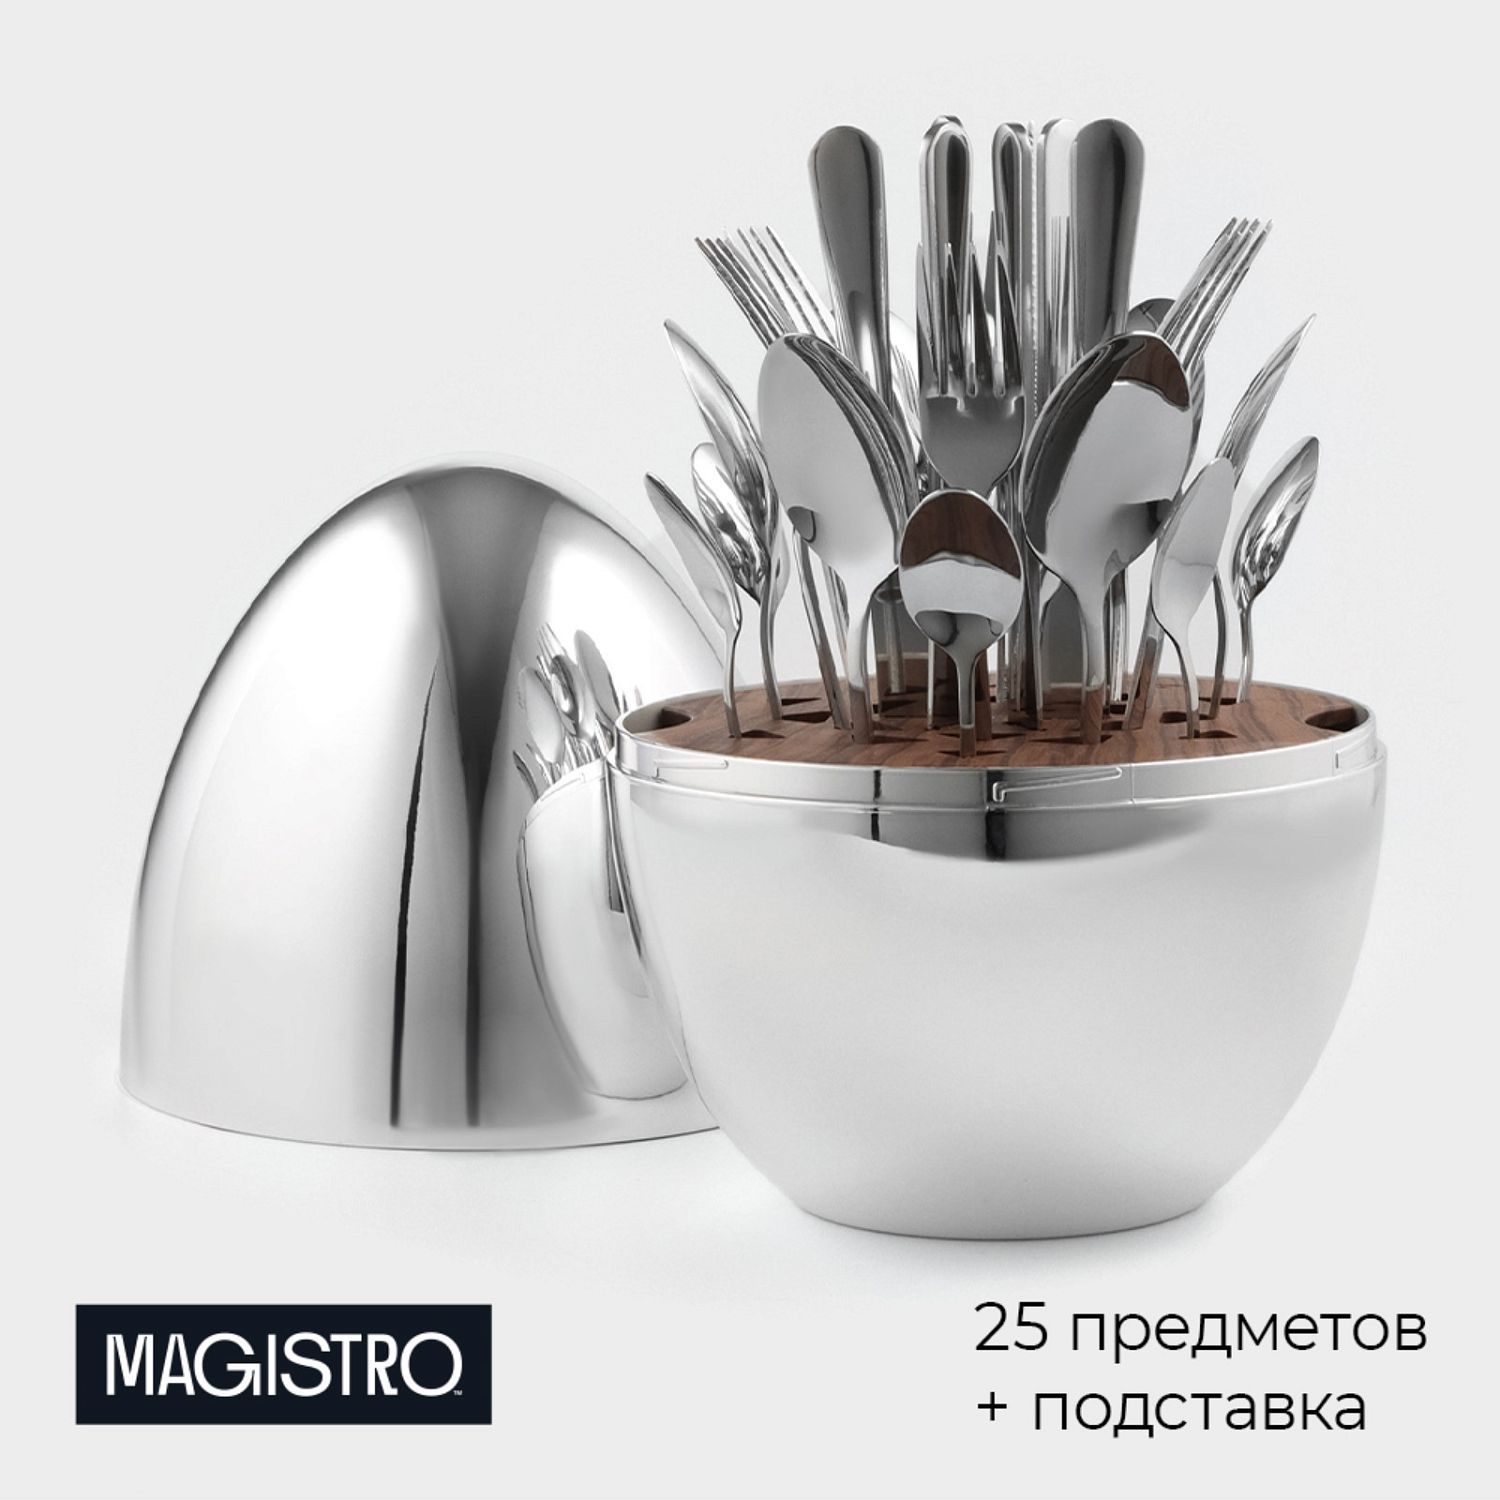 Набор столовых приборов из нержавеющей стали Magistro Milo, 24 предмета, в яйце, с ёршиком для посуды, цвет серебряный